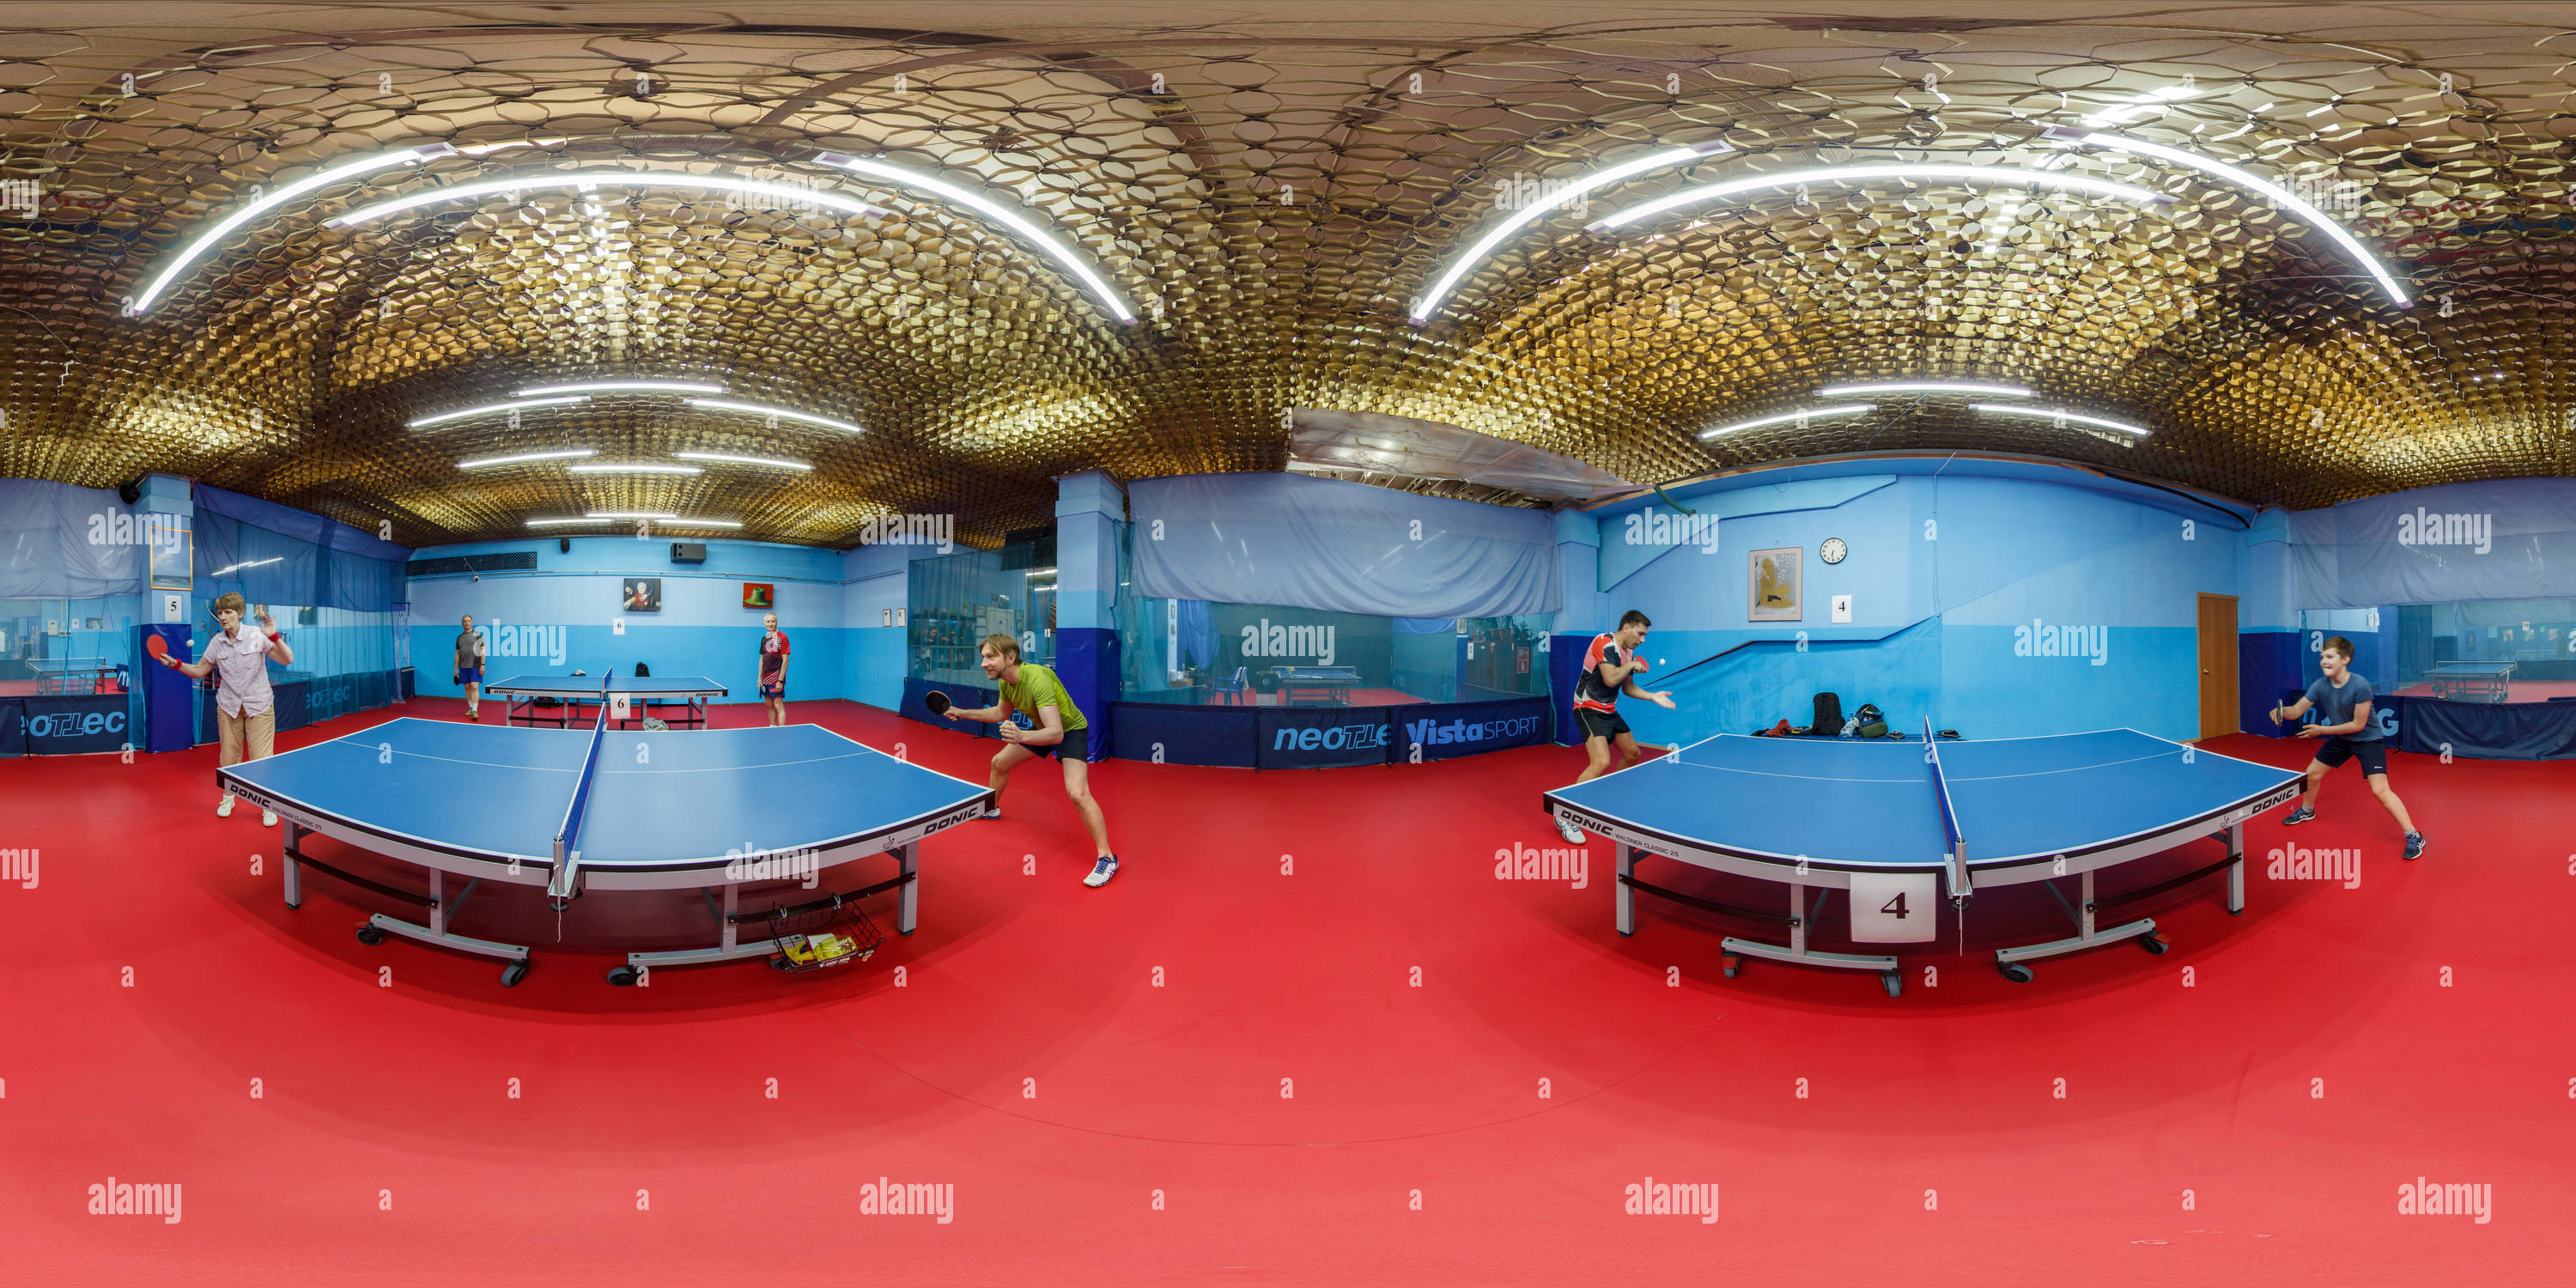 360 degree panoramic view of Клуб настольного тенниса 'Крылья Советов'